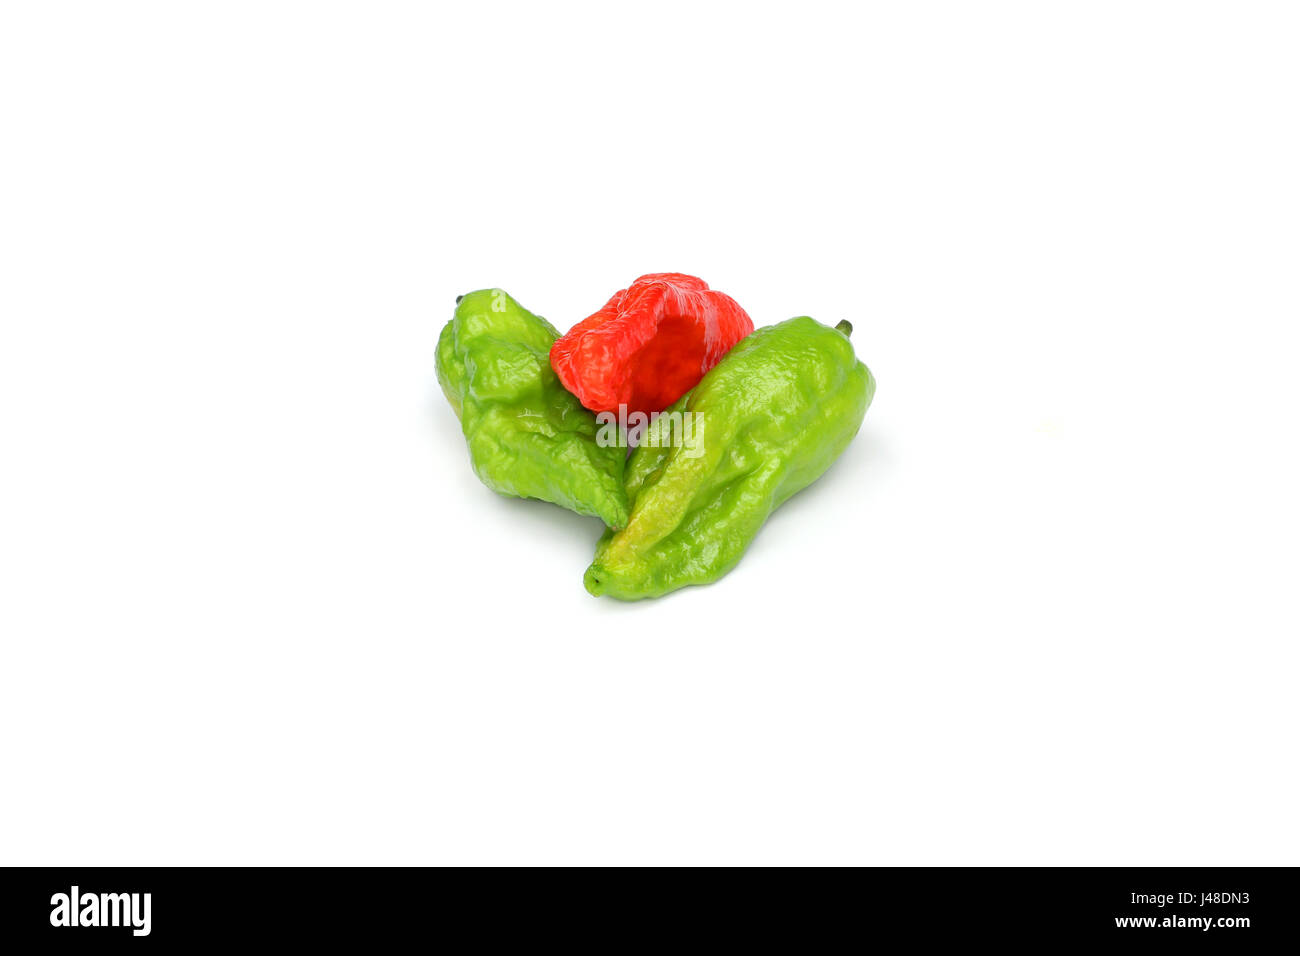 Fresh Bhut Jolokia chili pepper or Naga Morich over white background Stock Photo